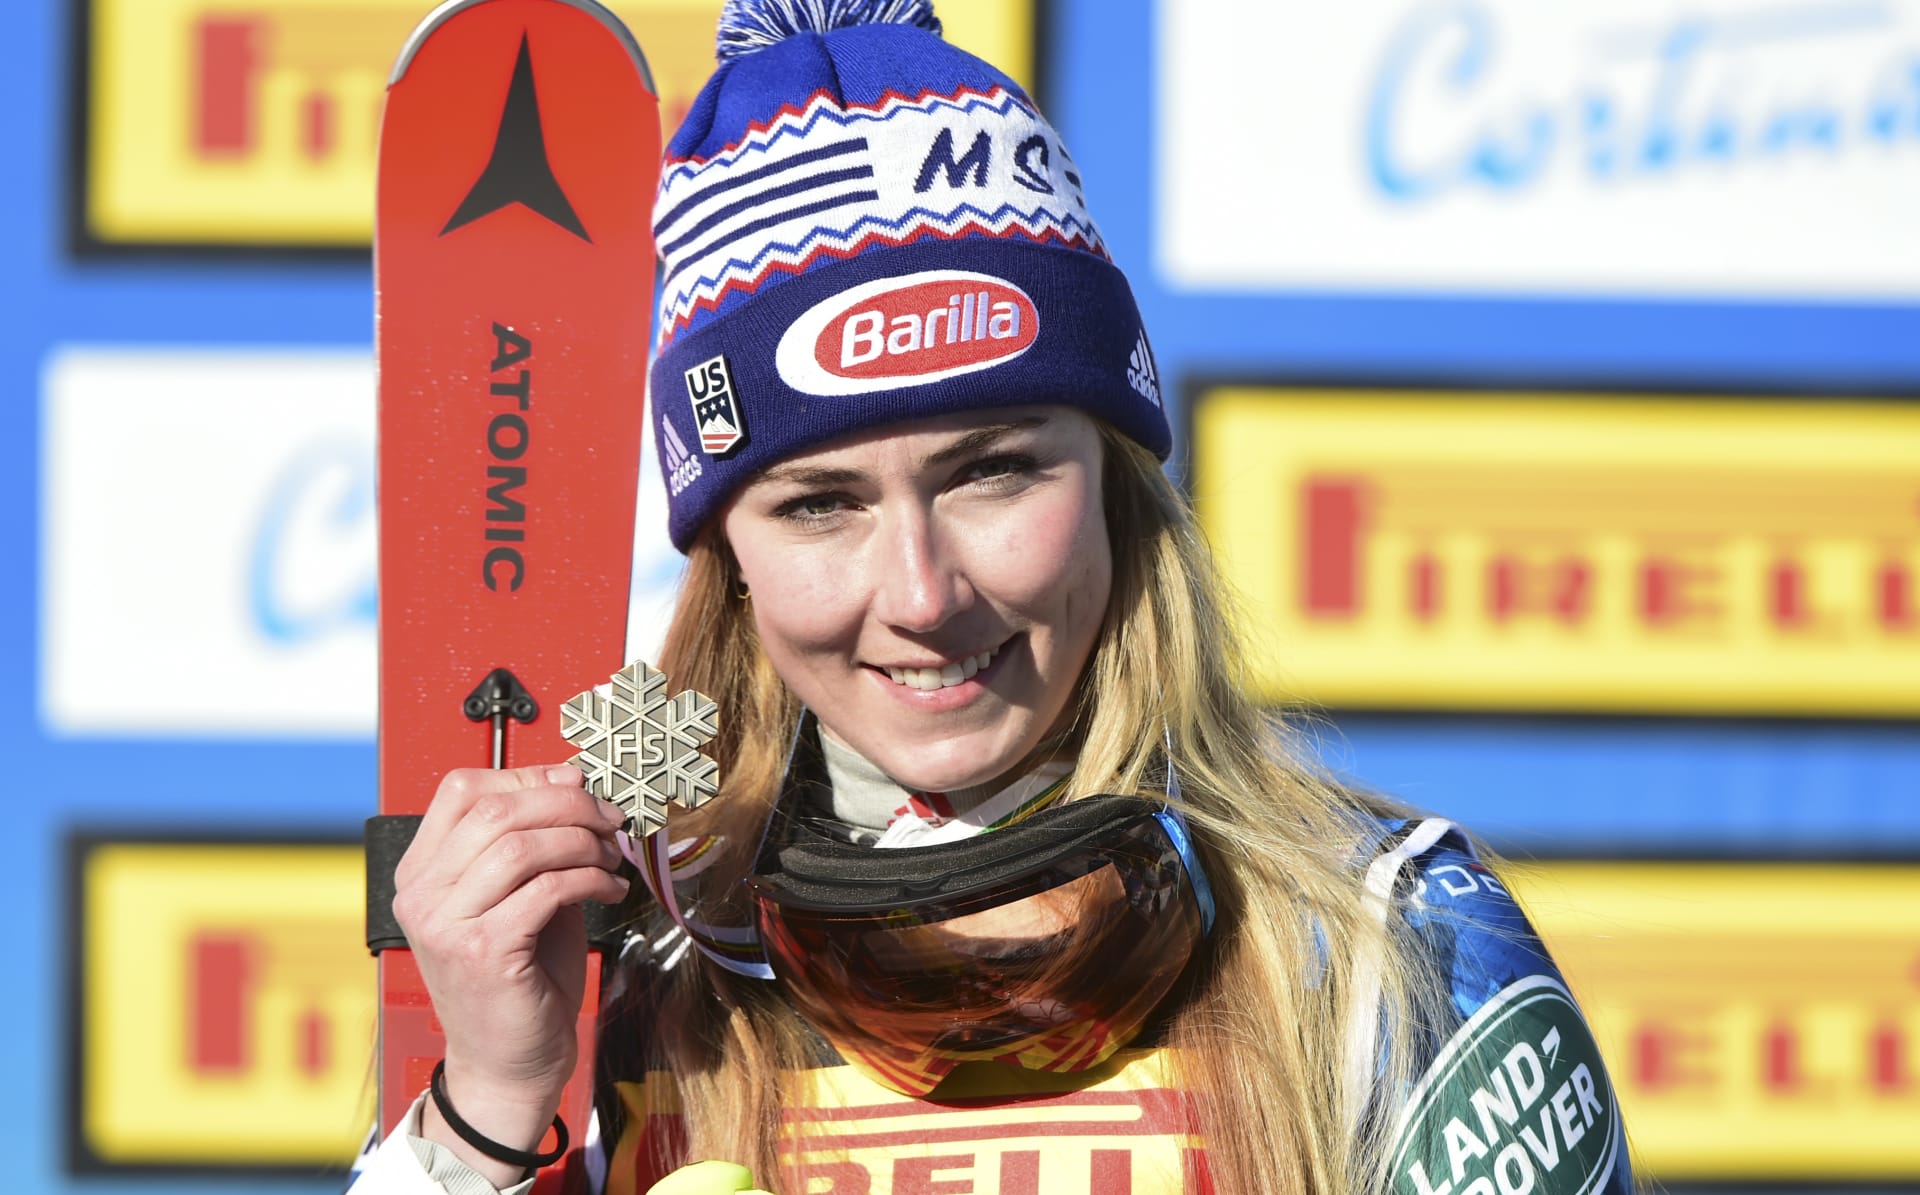 SUPER-G | Mikaela Shiffrinová, královna alpského lyžování, je největší favoritkou zejména v technických disciplínách. Ale i v super-G patří do společnosti, která má ambici získat cenný kov. 